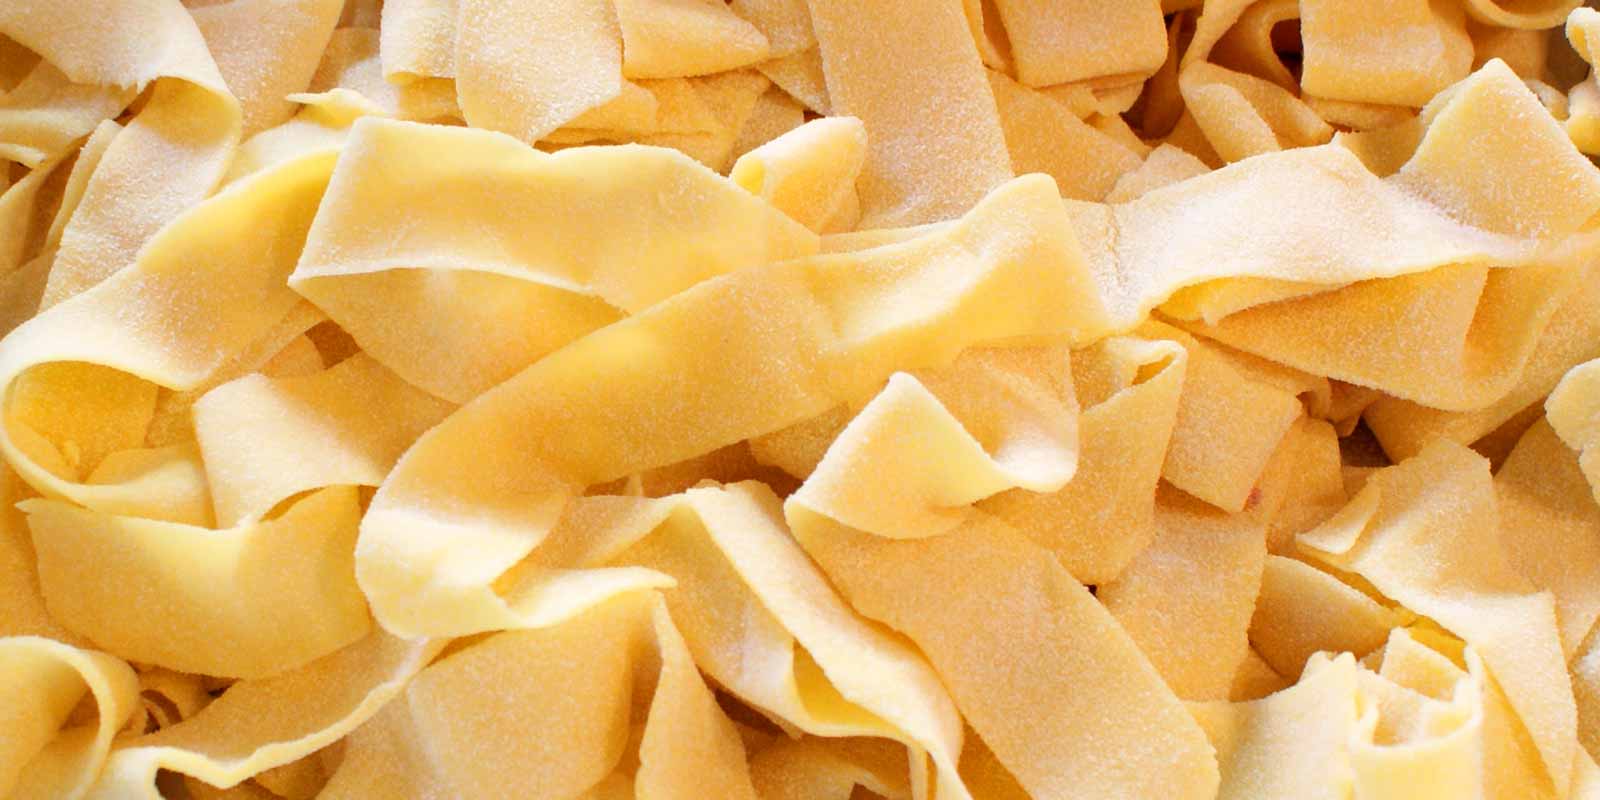 De Cecco pasta og mel Det italienske firma De Cecco har siden 1886 produceret pasta og mel af fremragende kvalitet.
Se selv!